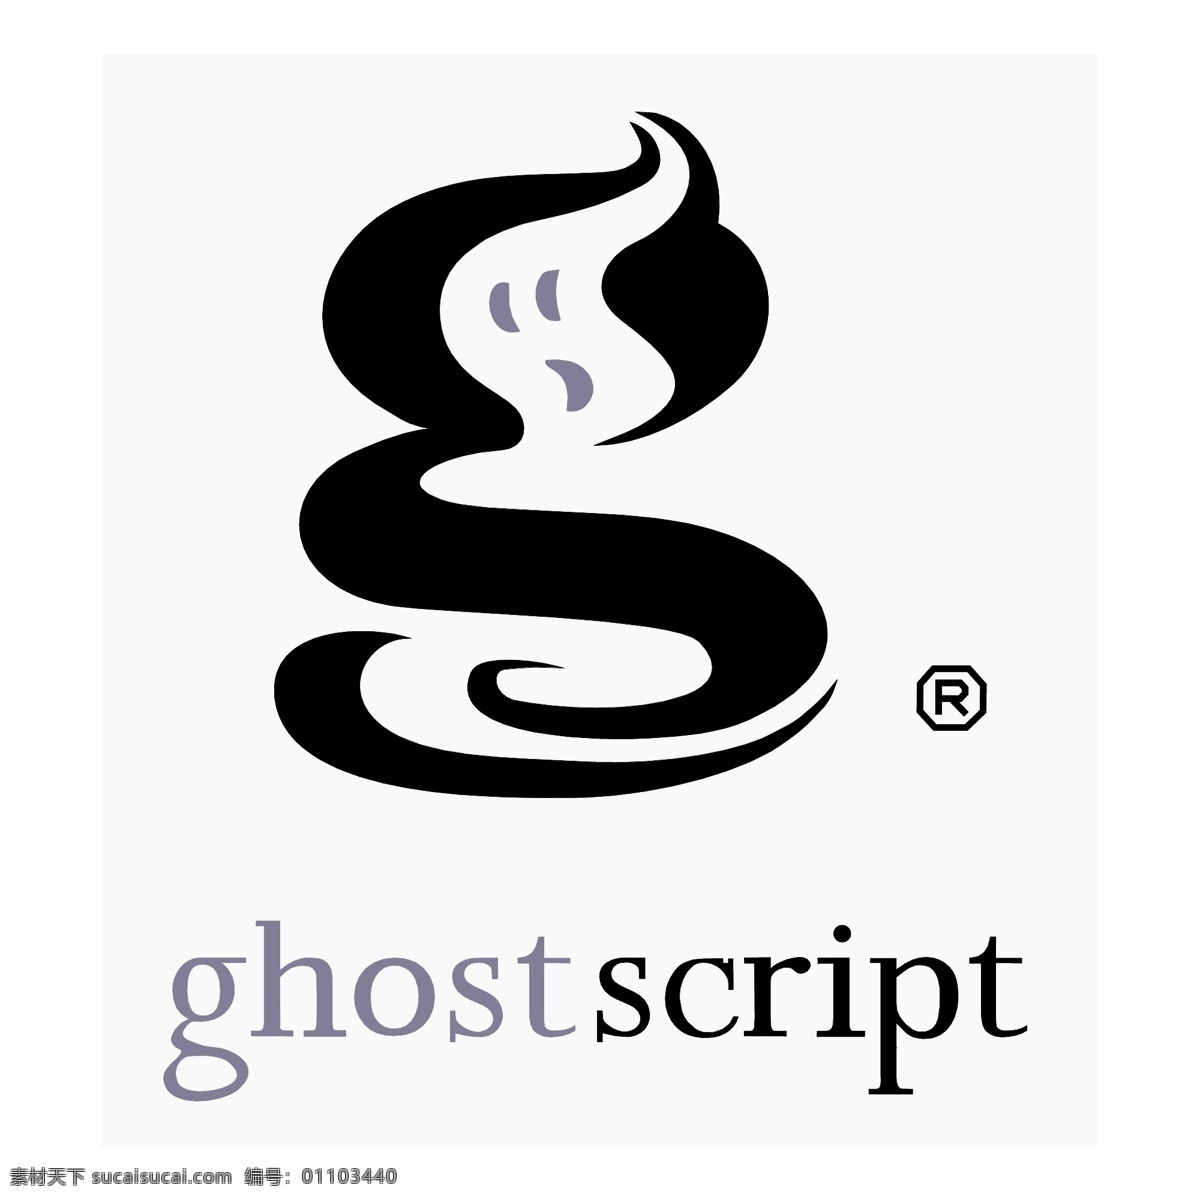 放心 ghostscript 标志 标识为免费 白色